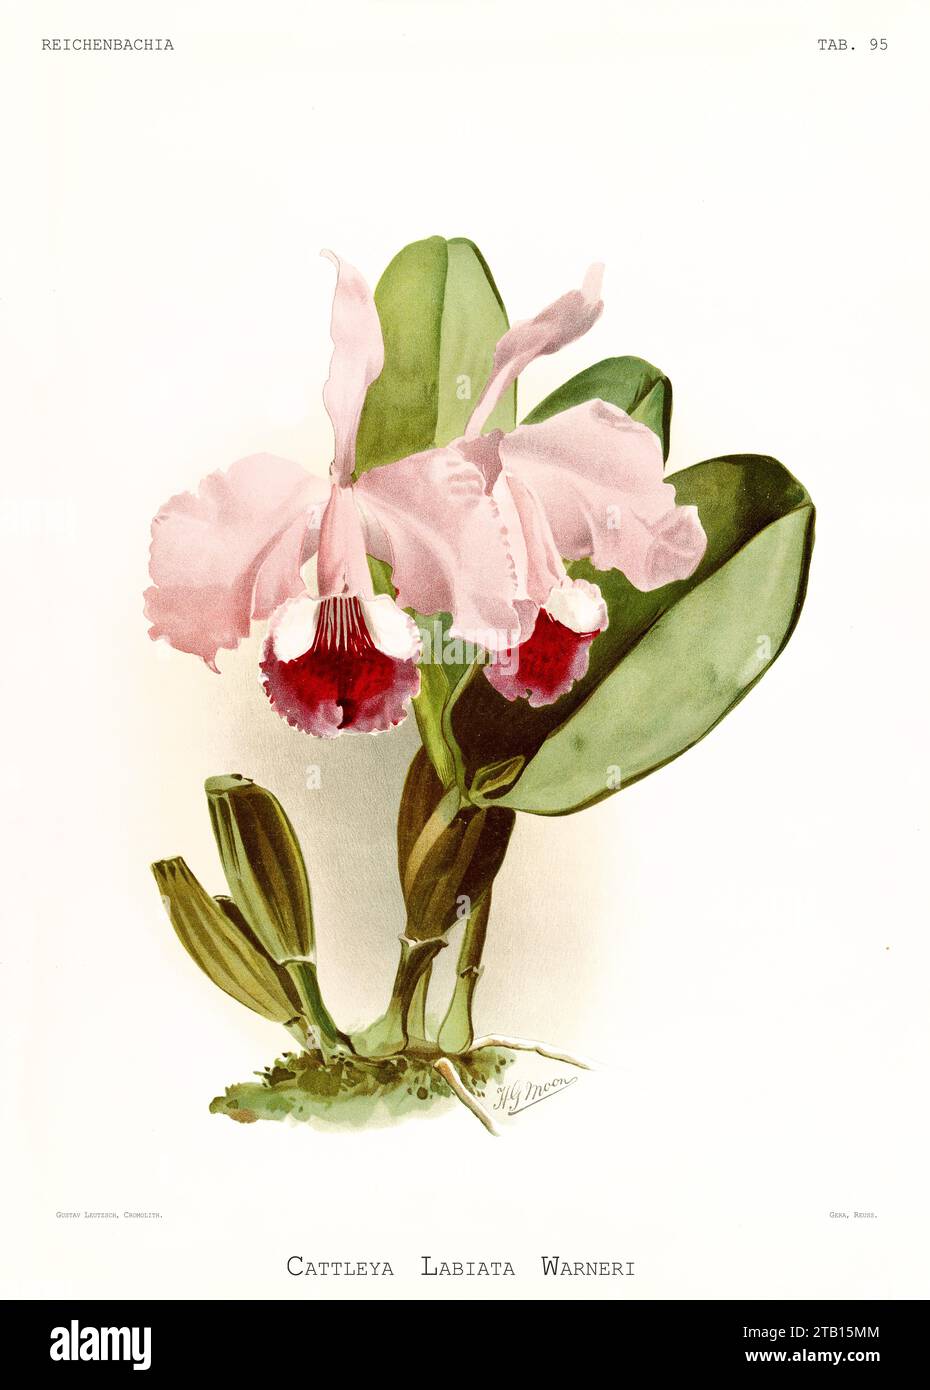 Vieille illustration de Warner's Cattleya (Cattleya warneri). Reichenbachia, de F. Sander. St. Albans, Royaume-Uni, 1888 - 1894 Banque D'Images